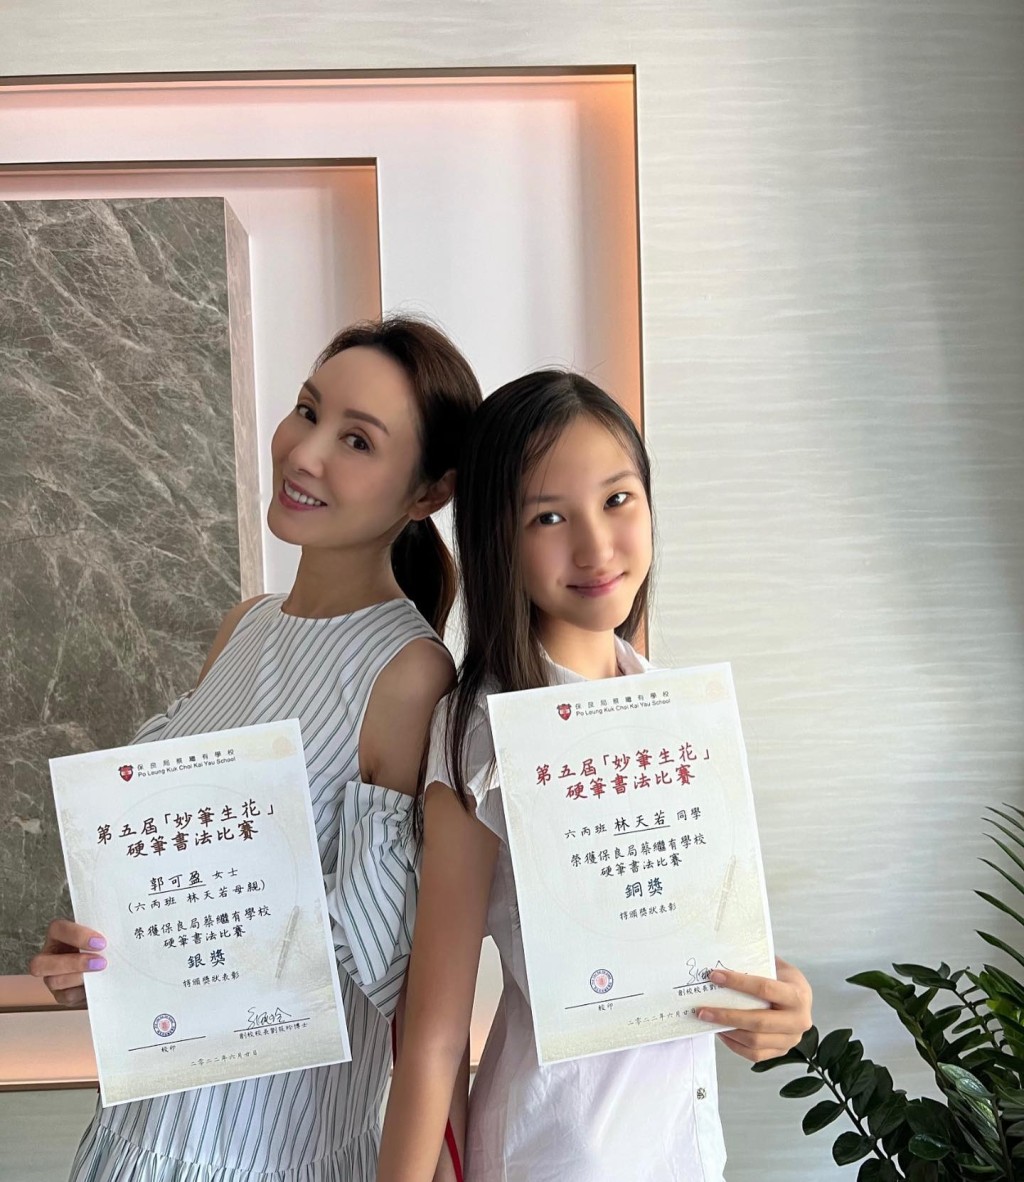 林天若与妈妈郭可盈一起参加校内中文书法比赛，分别获得银奖和铜奖。